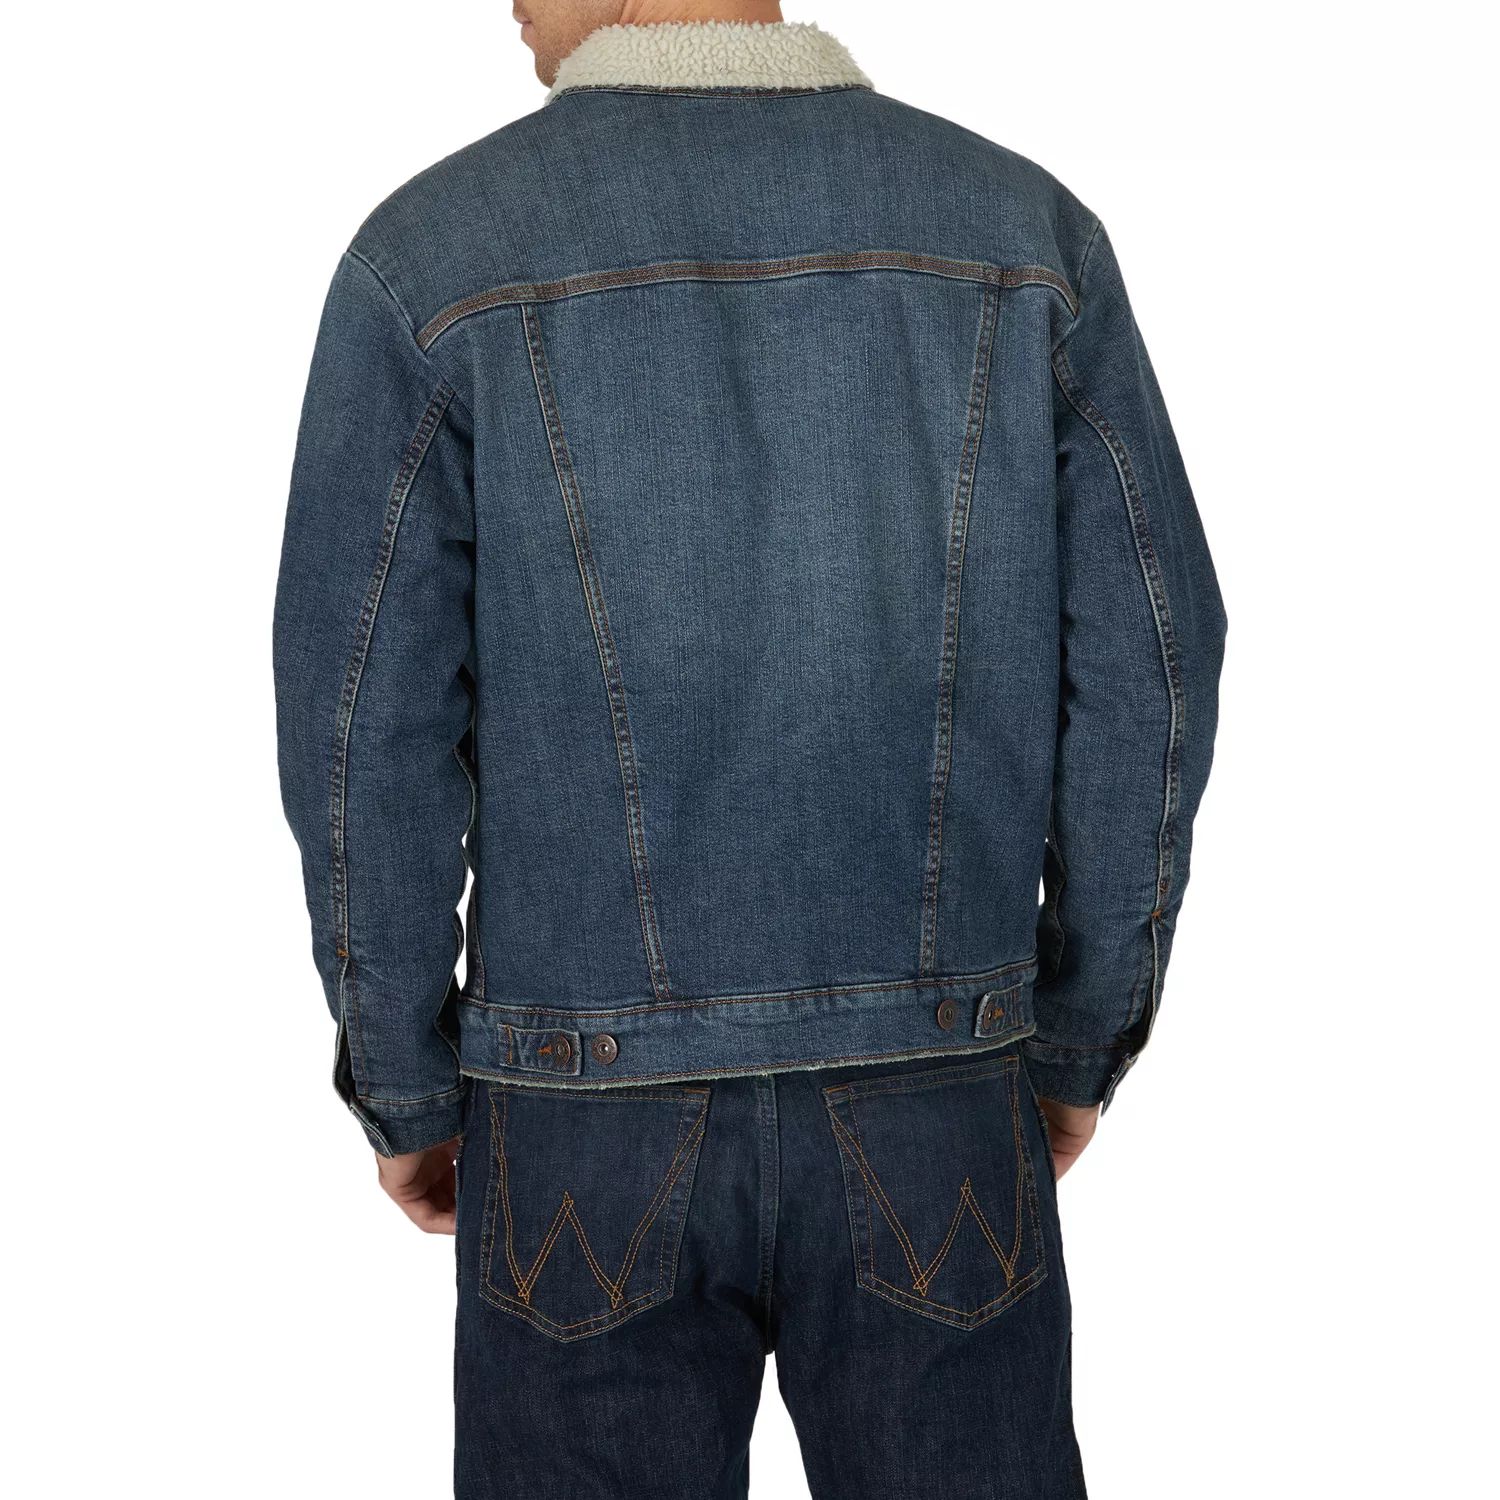 Мужская куртка на подкладке из шерпы Wrangler панама called a garment sherpa black